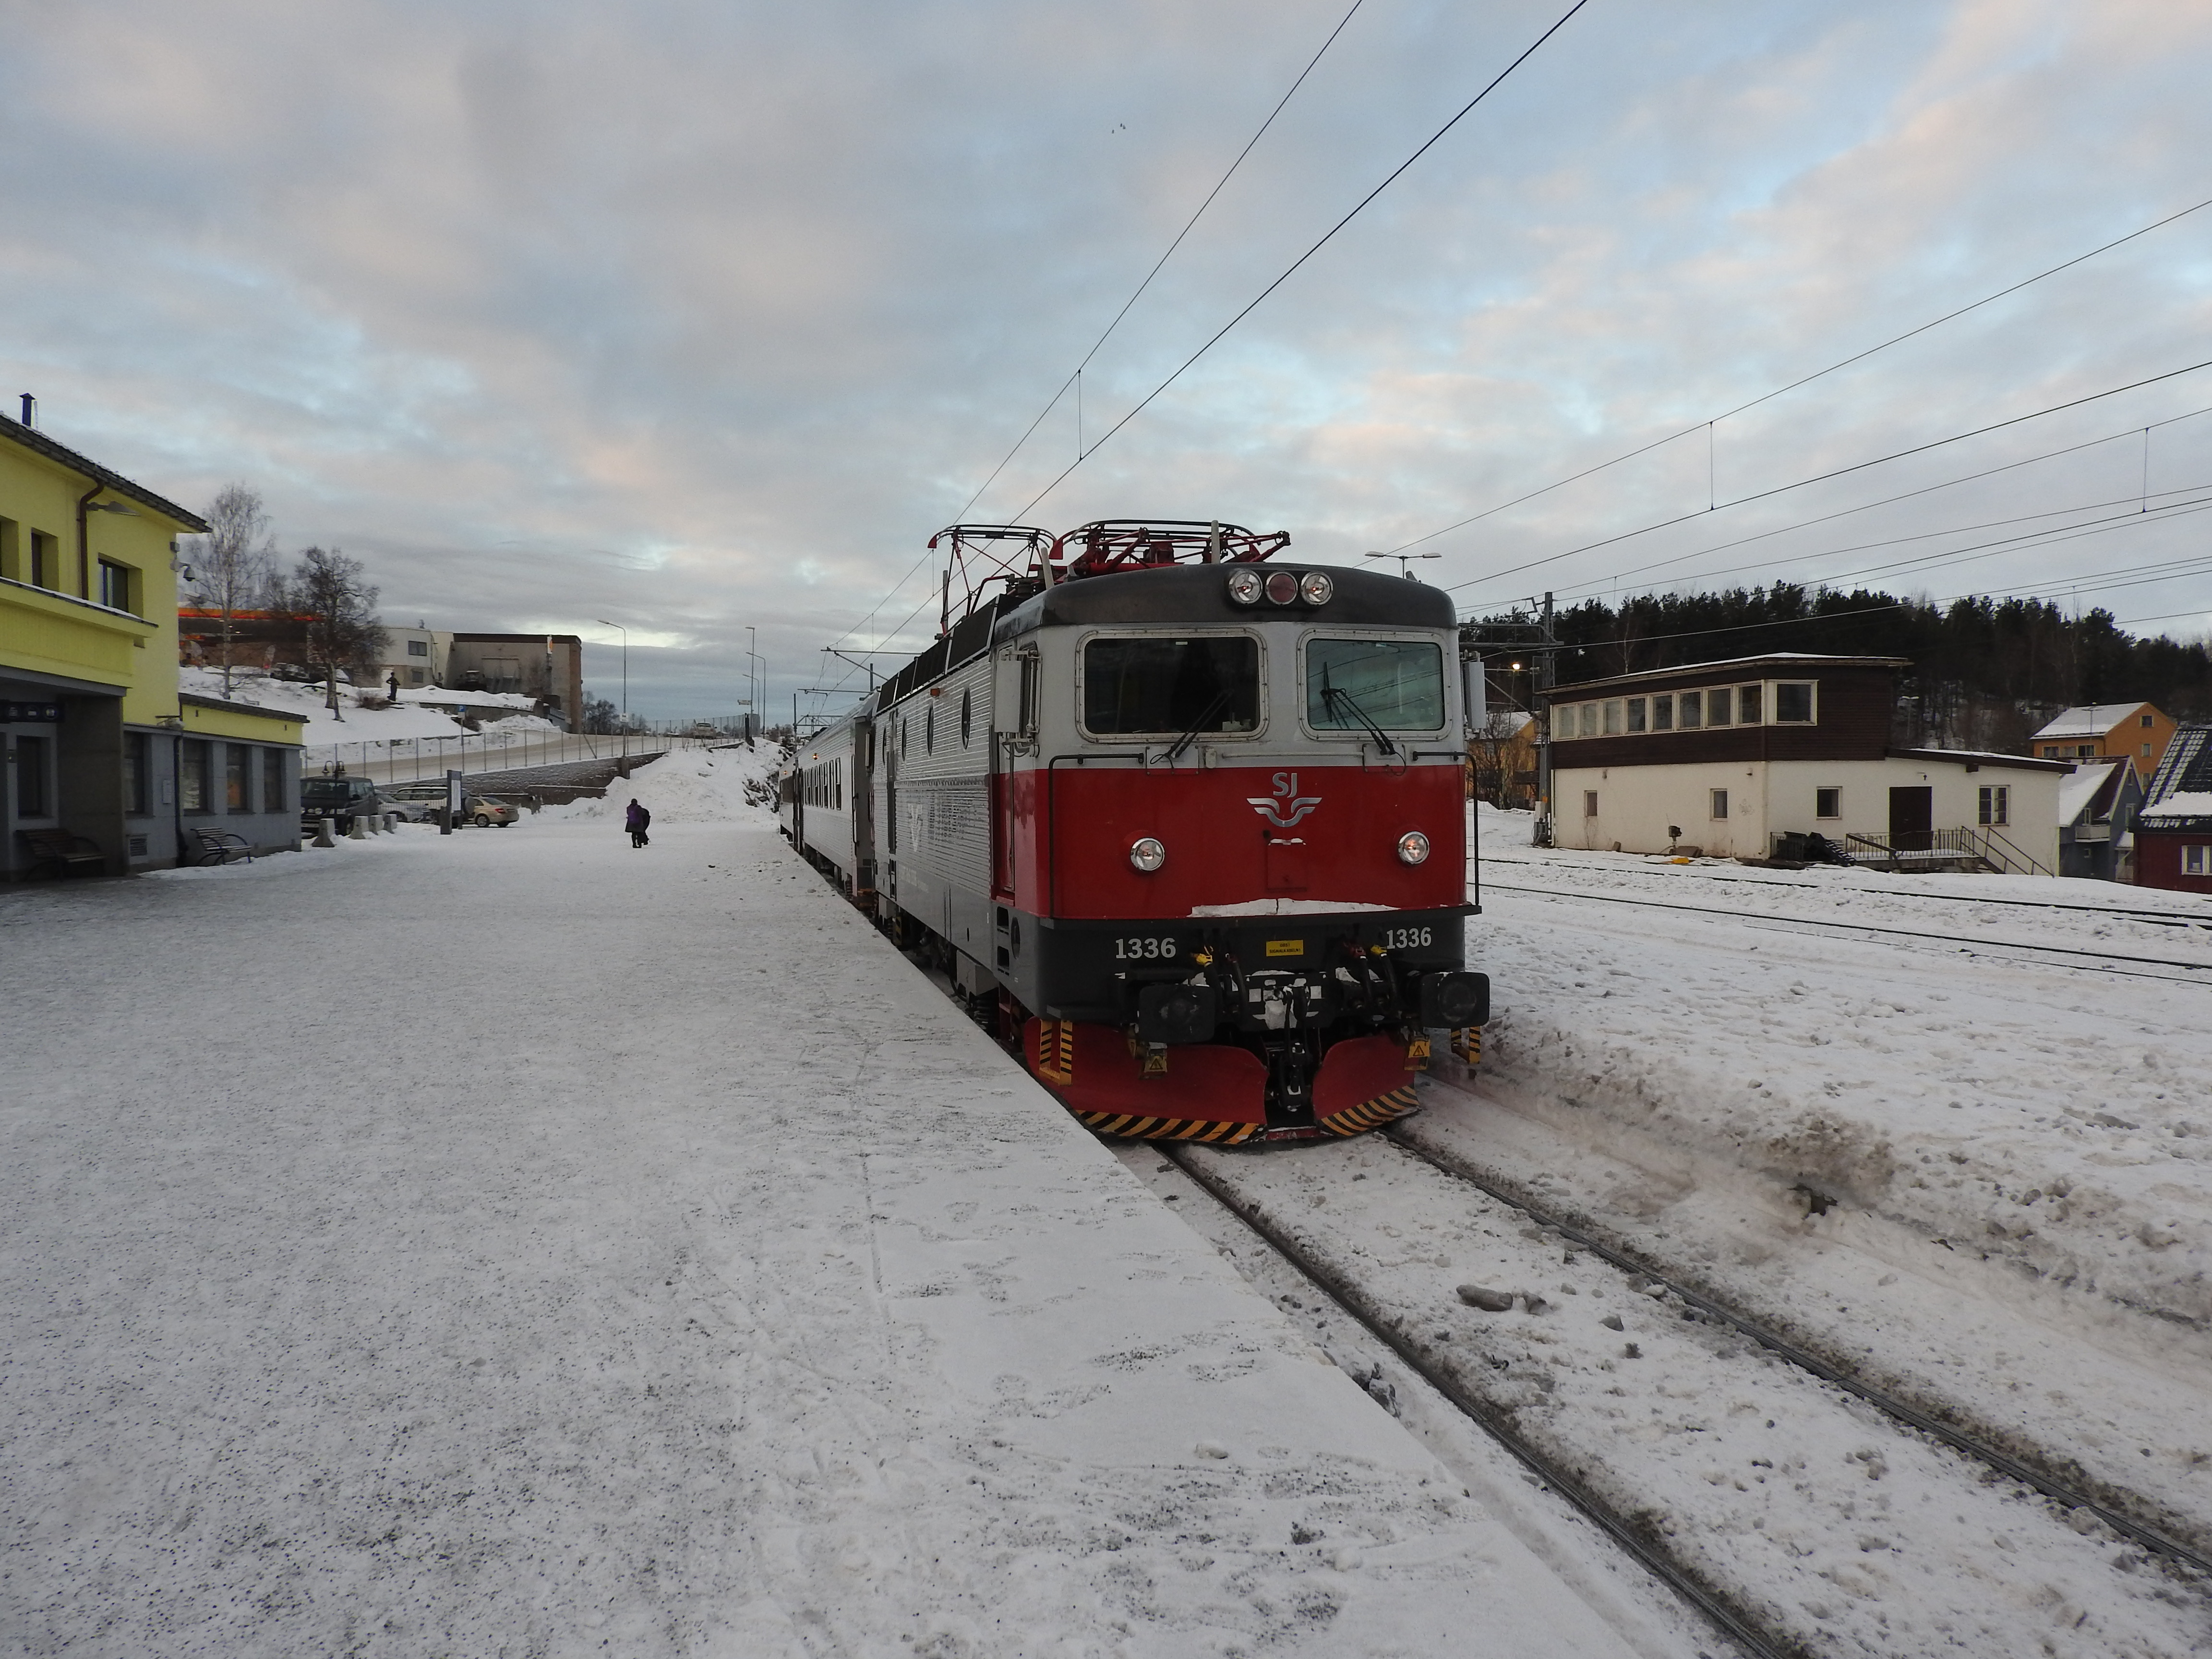 Train at Narvik Station, Norway